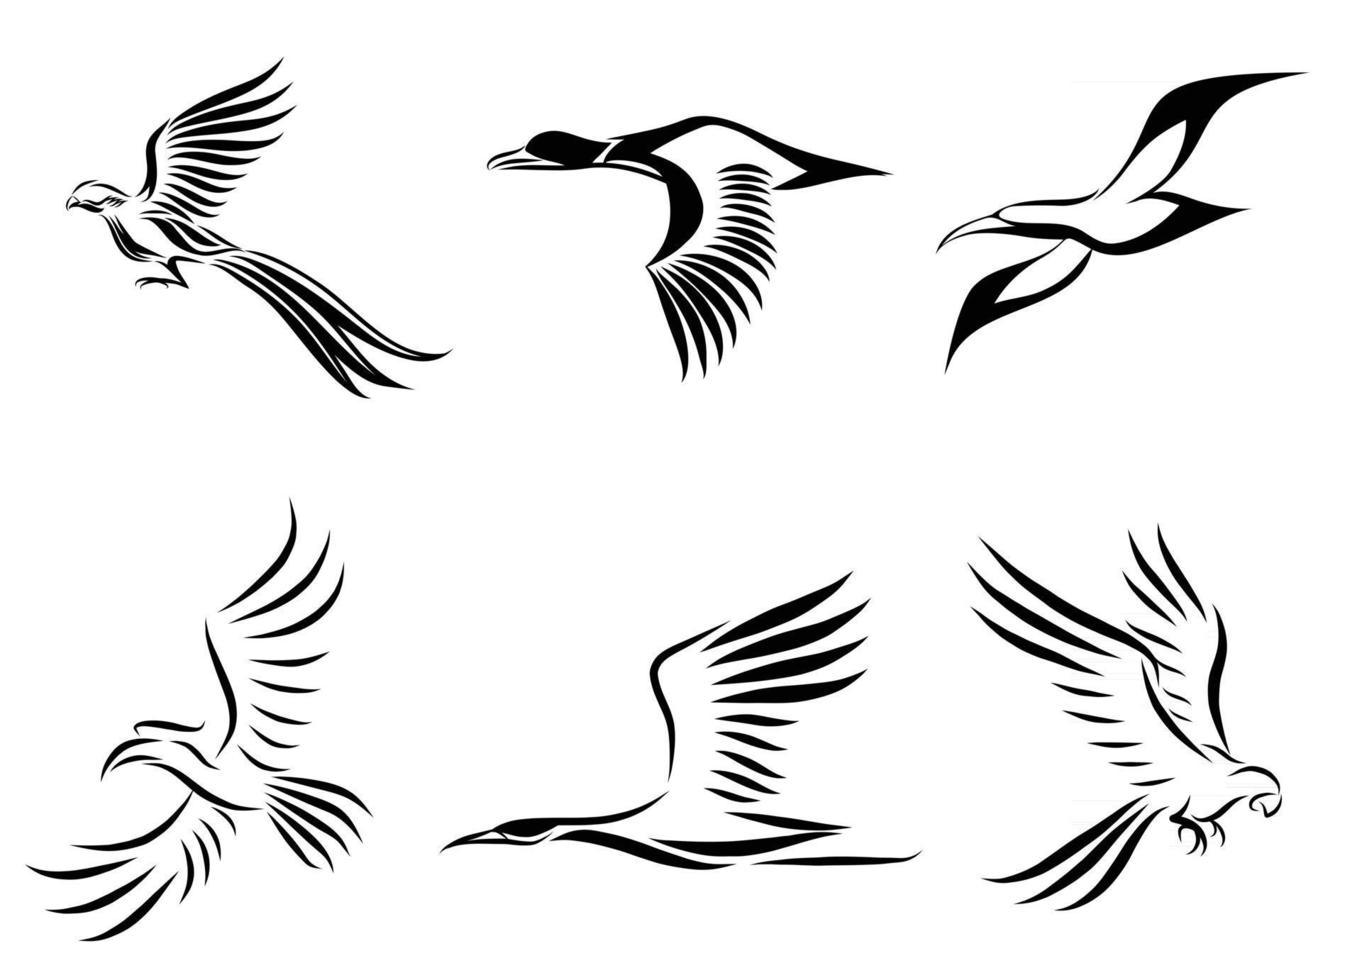 conjunto de seis imagens vetoriais de vários pássaros voando, como faisão gaivota pato-real guindaste calau e arara, bom uso para símbolo mascote ícone avatar e logotipo vetor